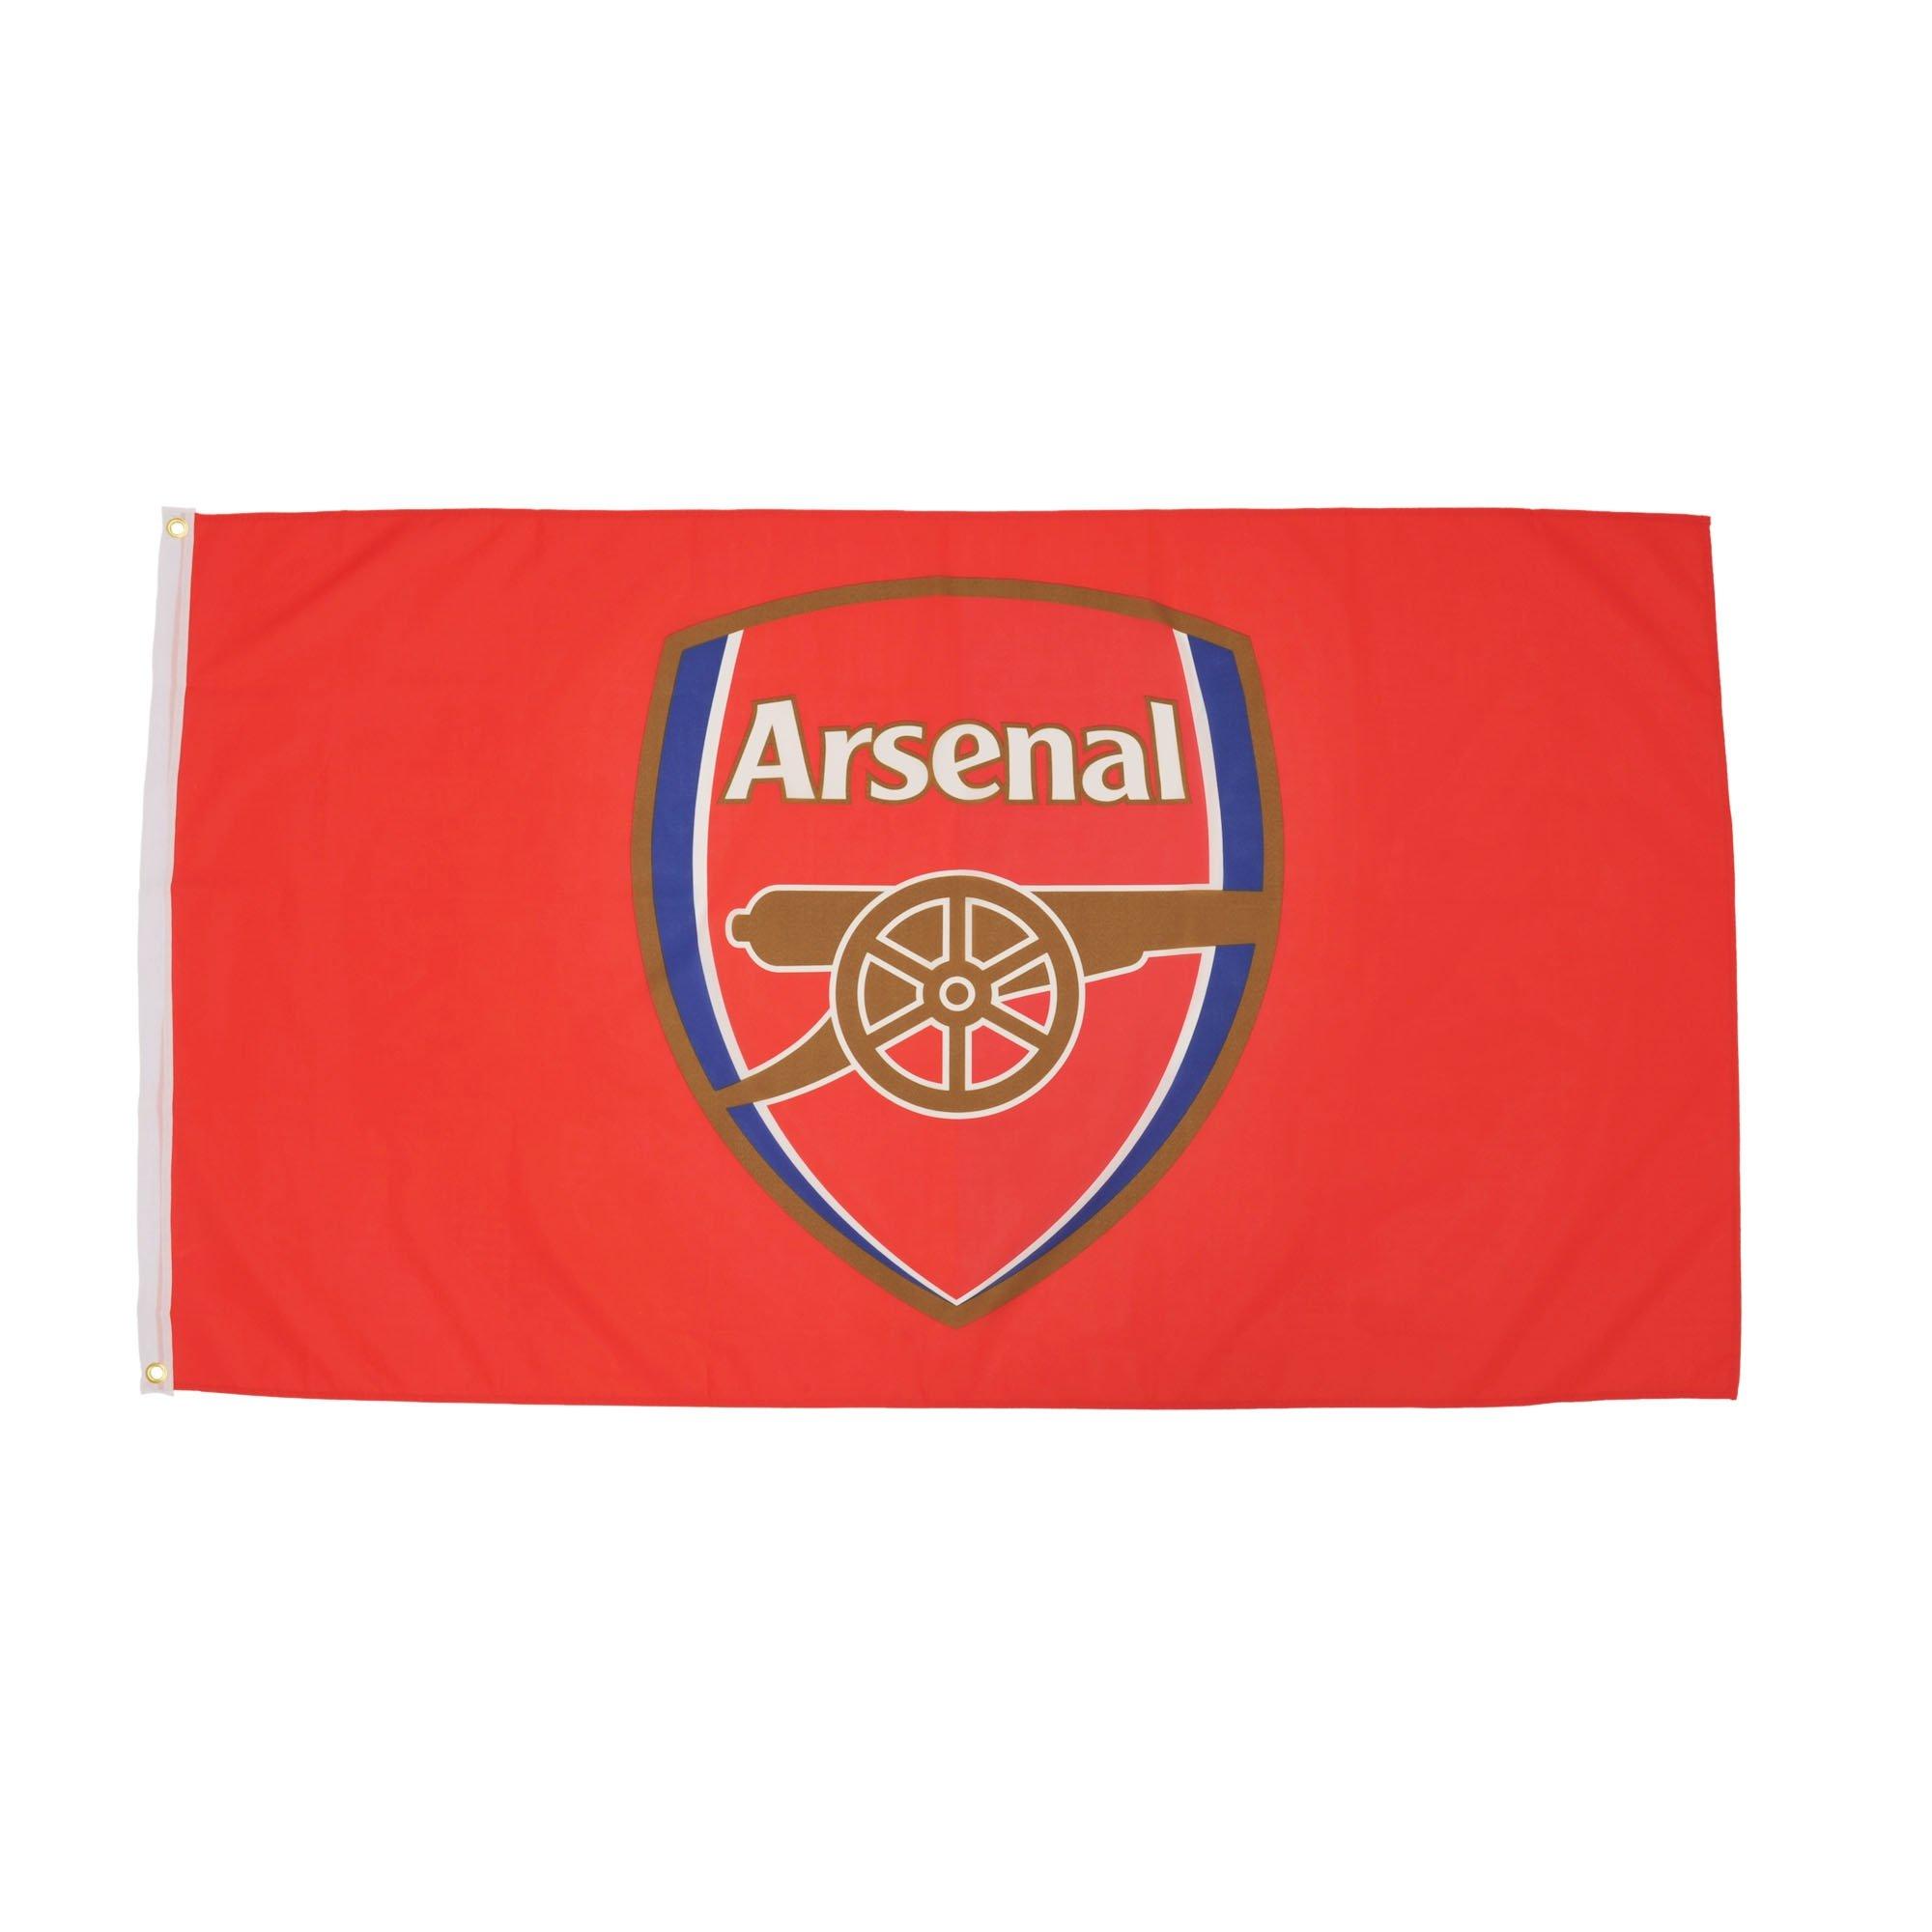 Arsenal Crest Flag